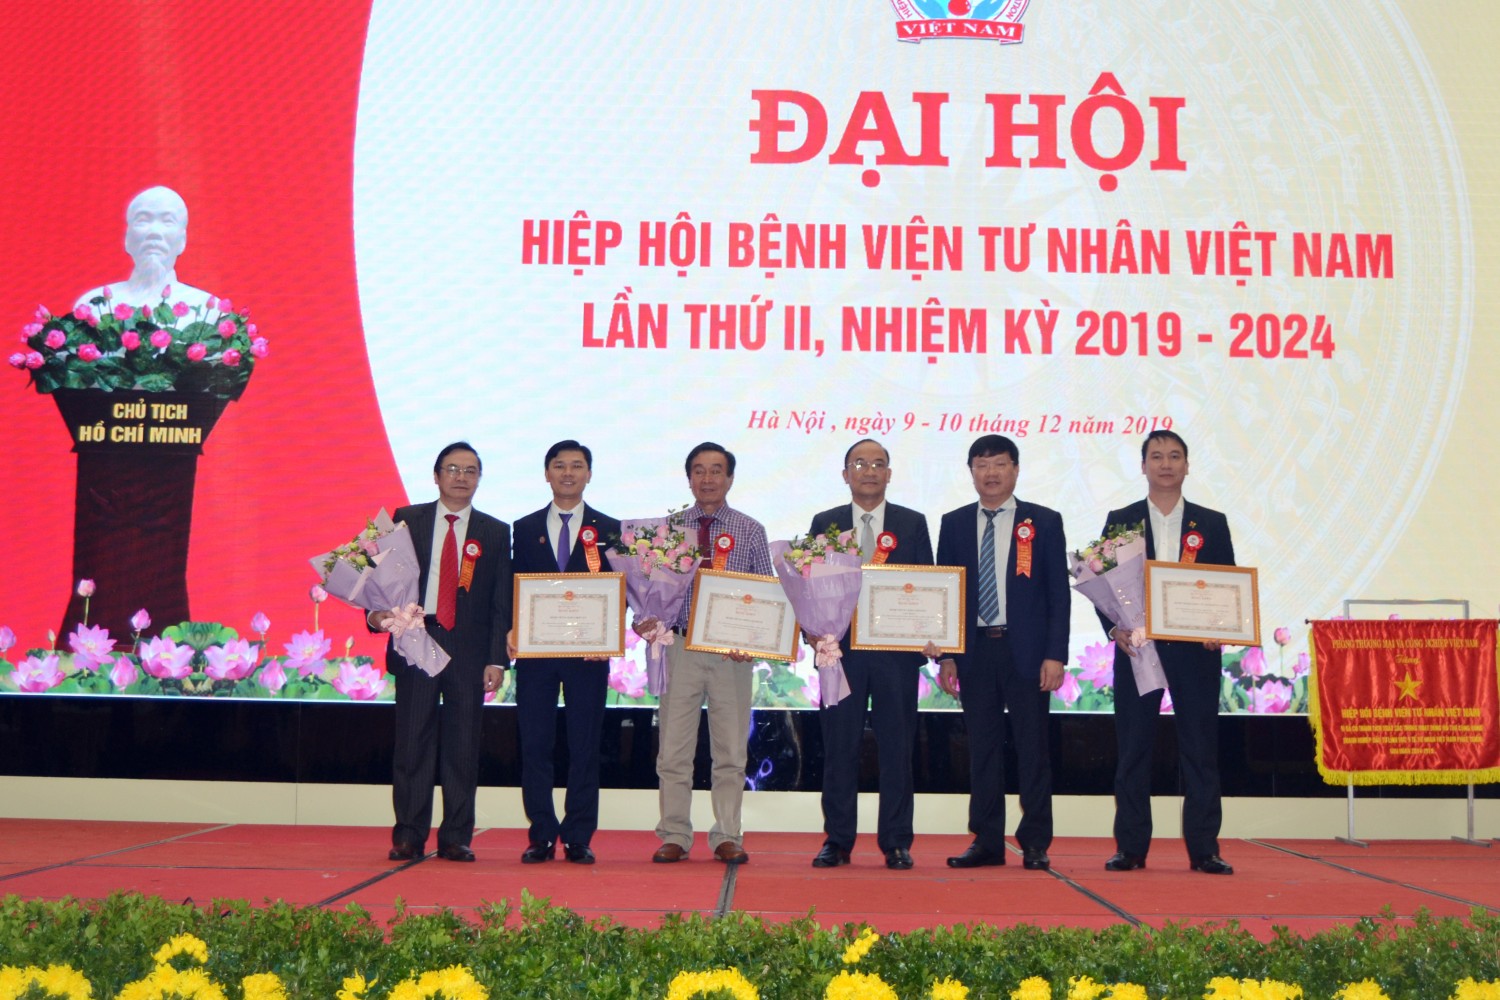 Đại hội hiệp hội tư nhân Việt Nam lần thứ II, nhiệm kỳ 2019 - 2024